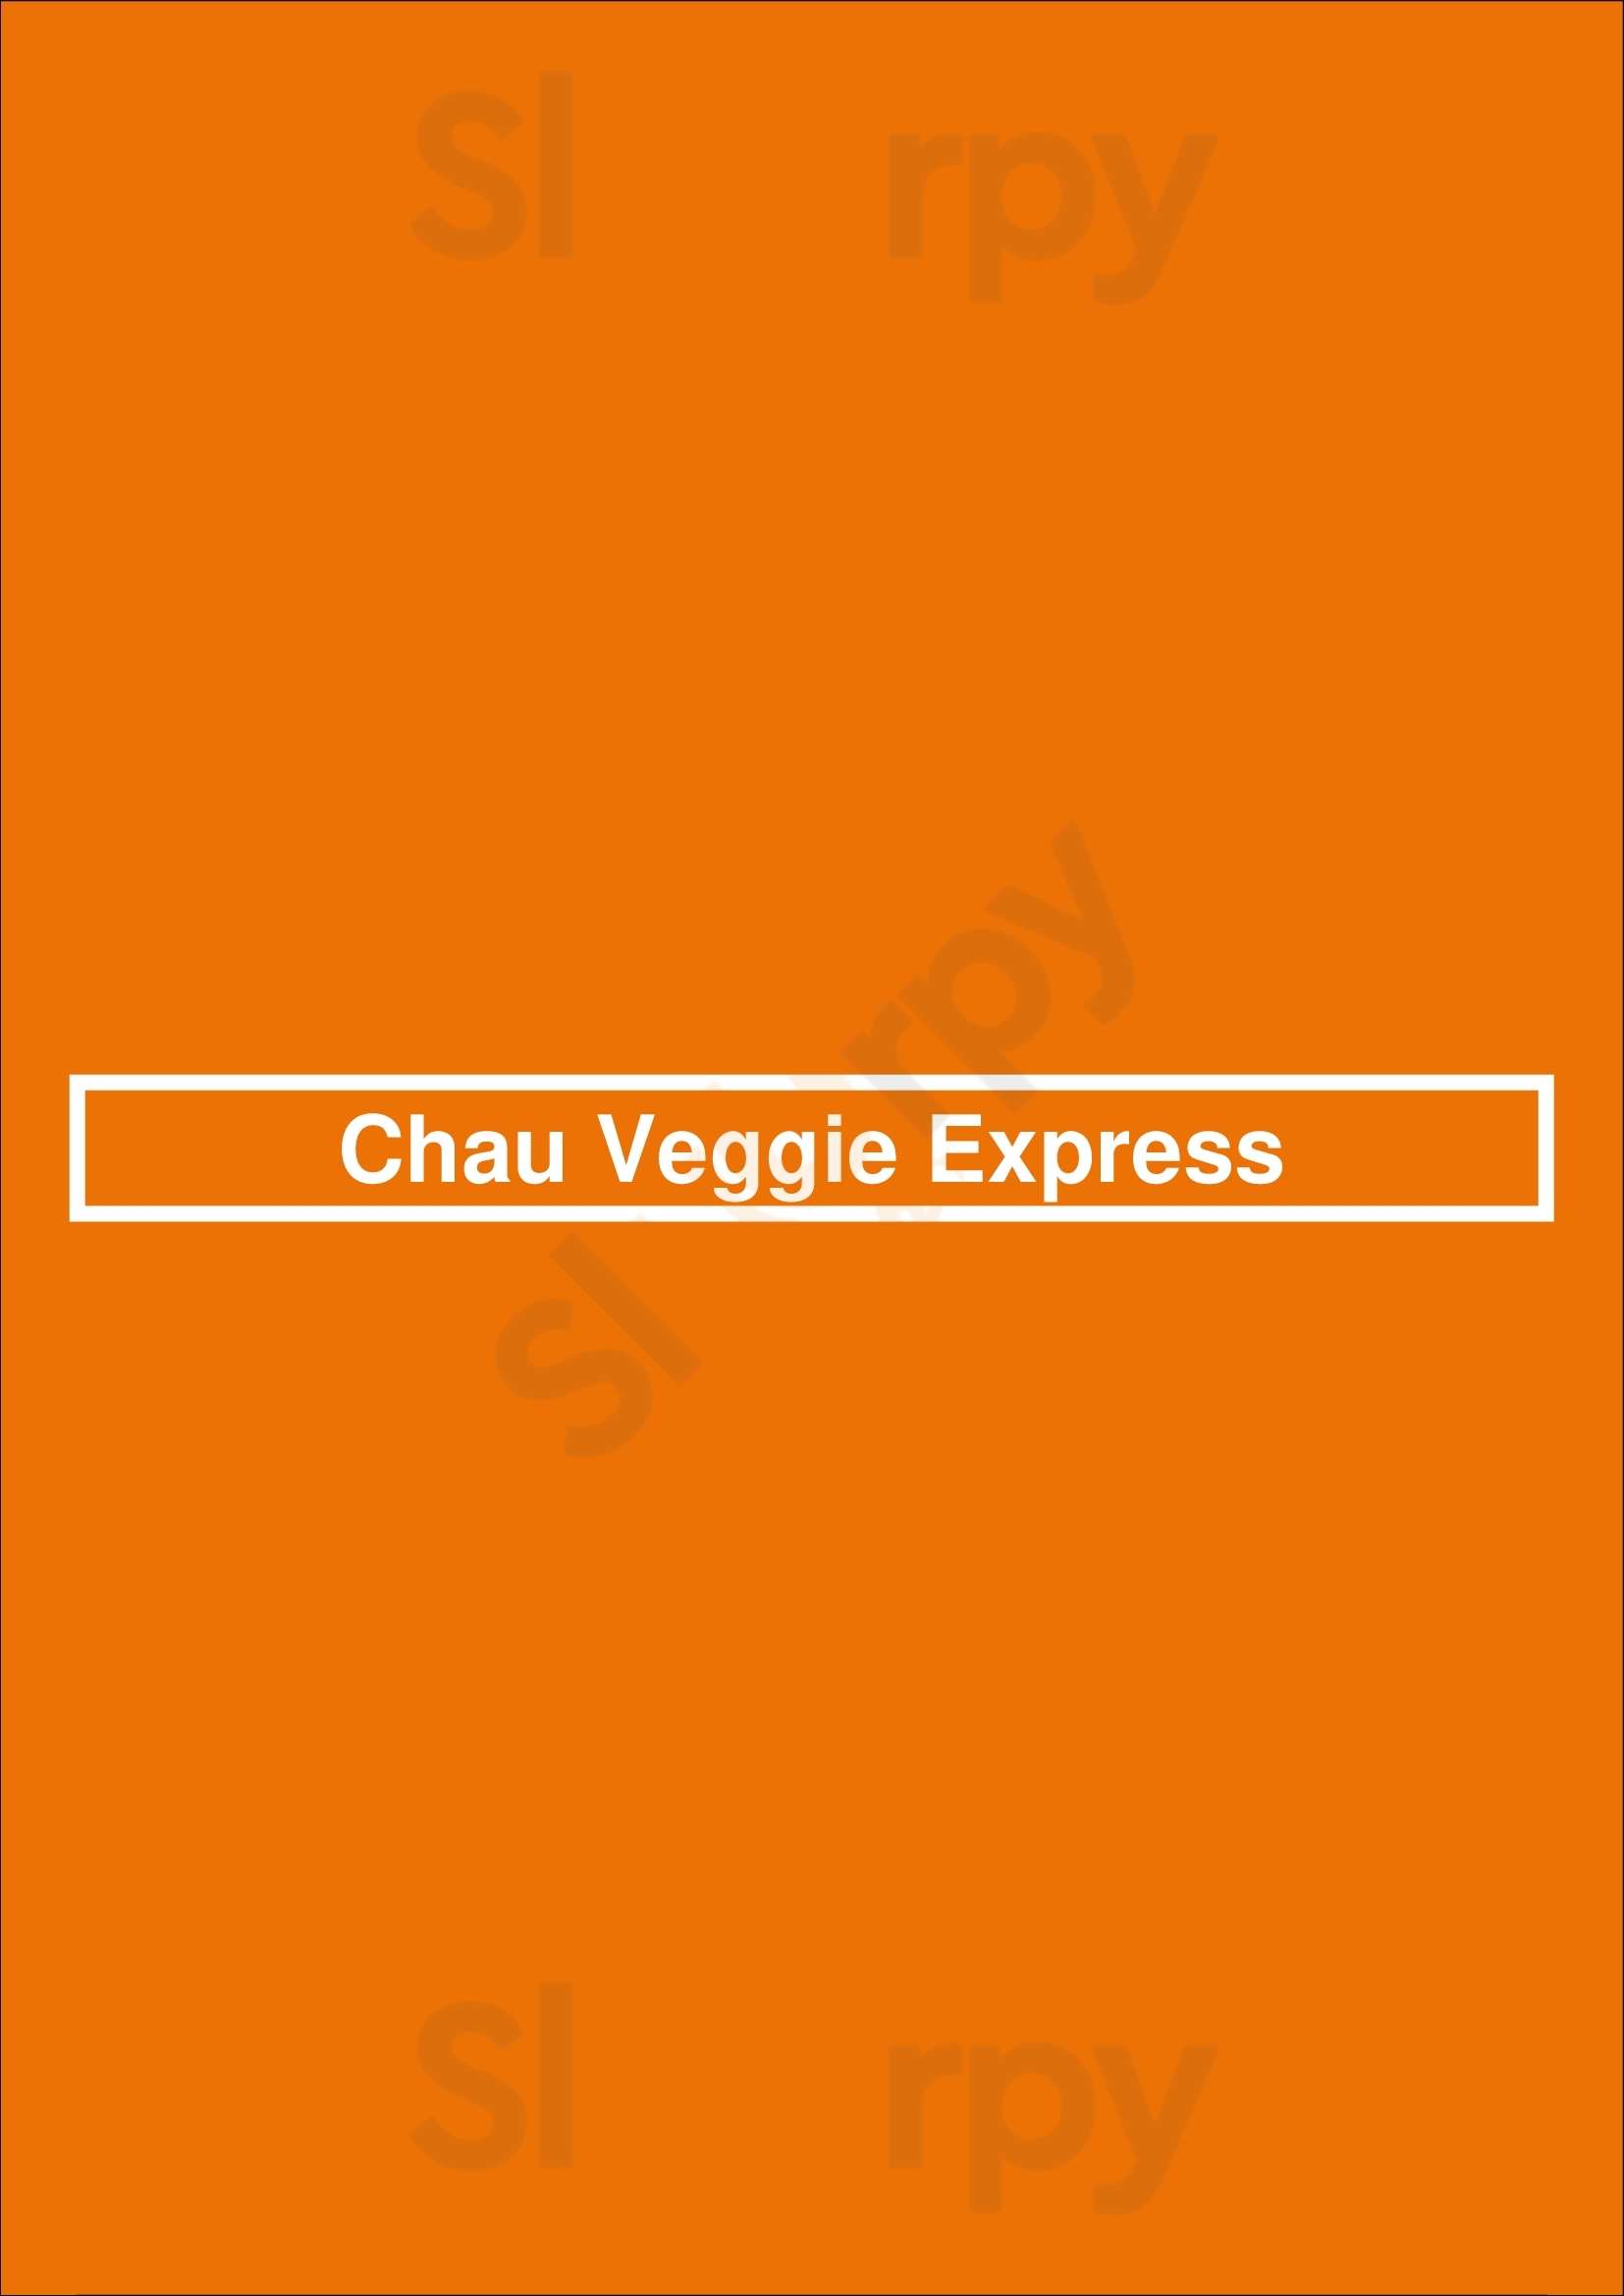 Chau Veggie Express Vancouver Menu - 1